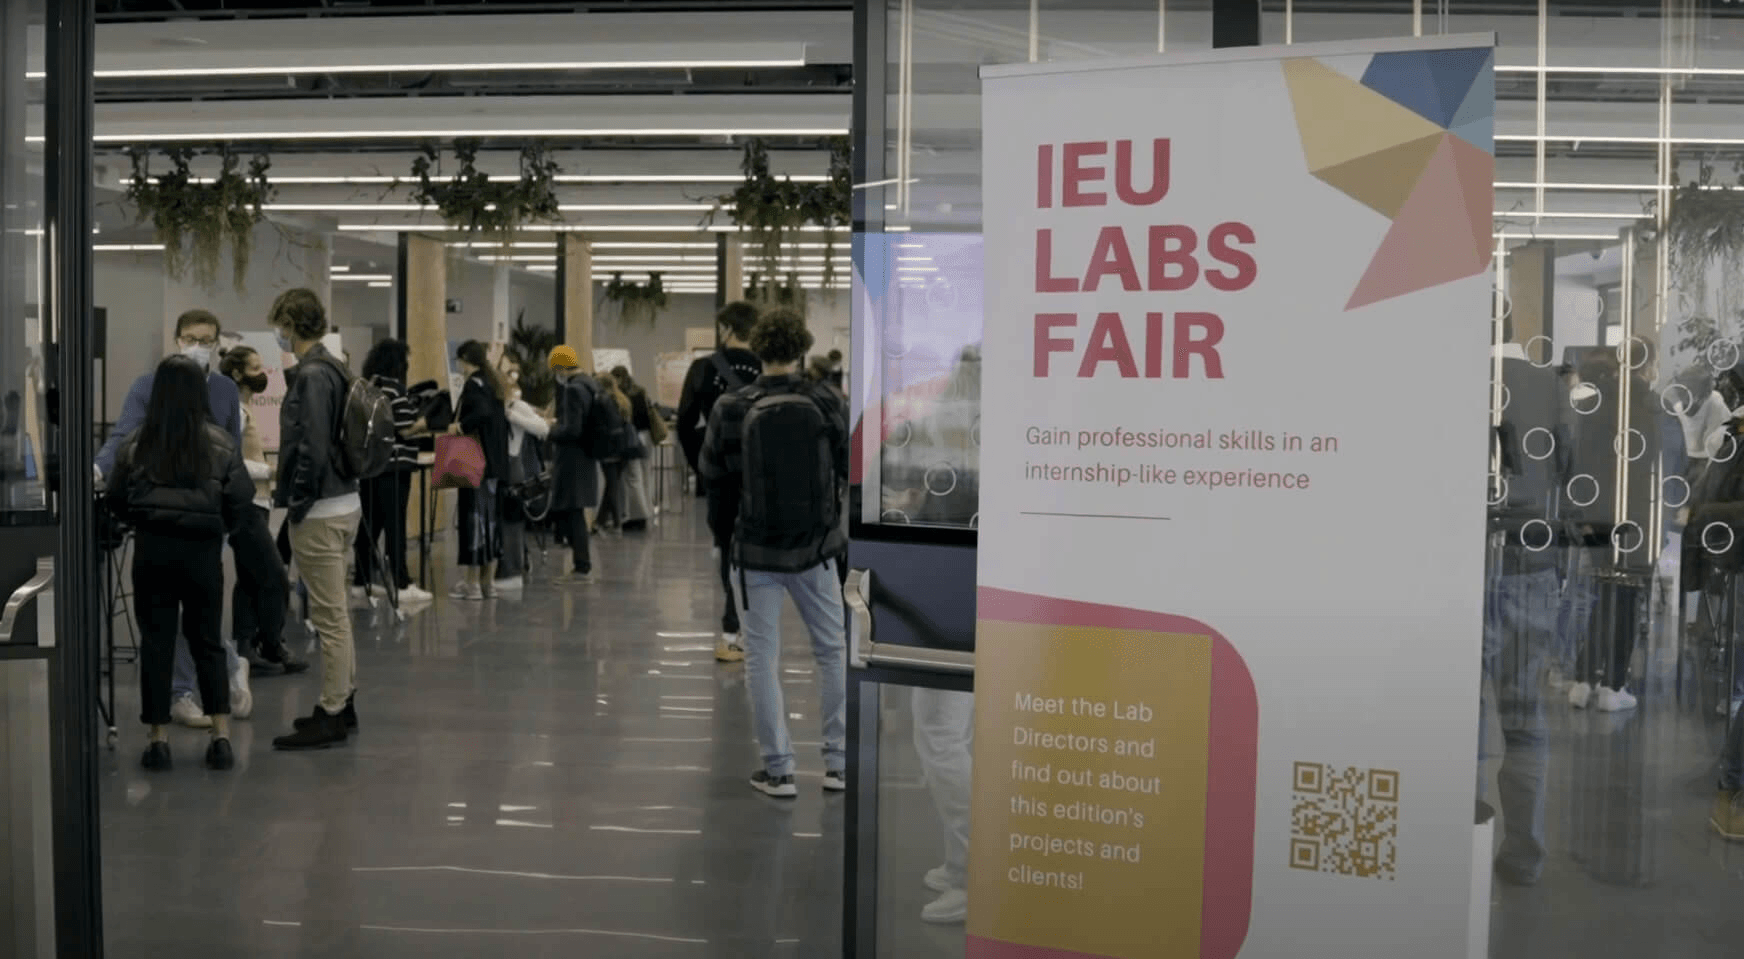 IEU Labs Fair Video | IE University